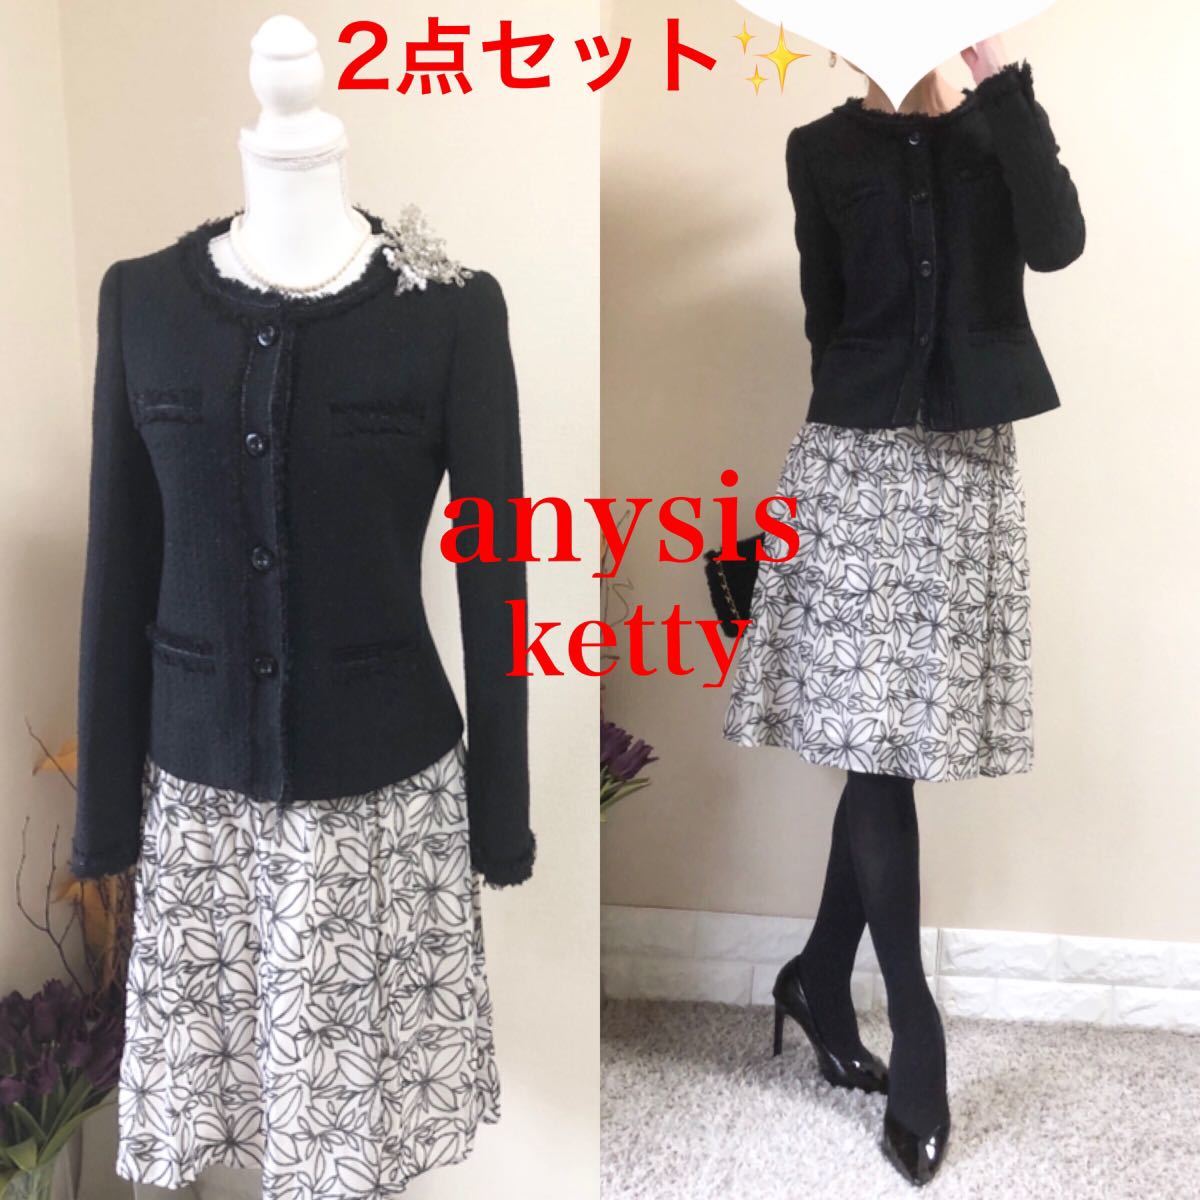 【残りわずか】スーツ/フォーマル/ドレストップ Mスーツ エニィスィス ツイードジャケット 黒 ケティ スカート